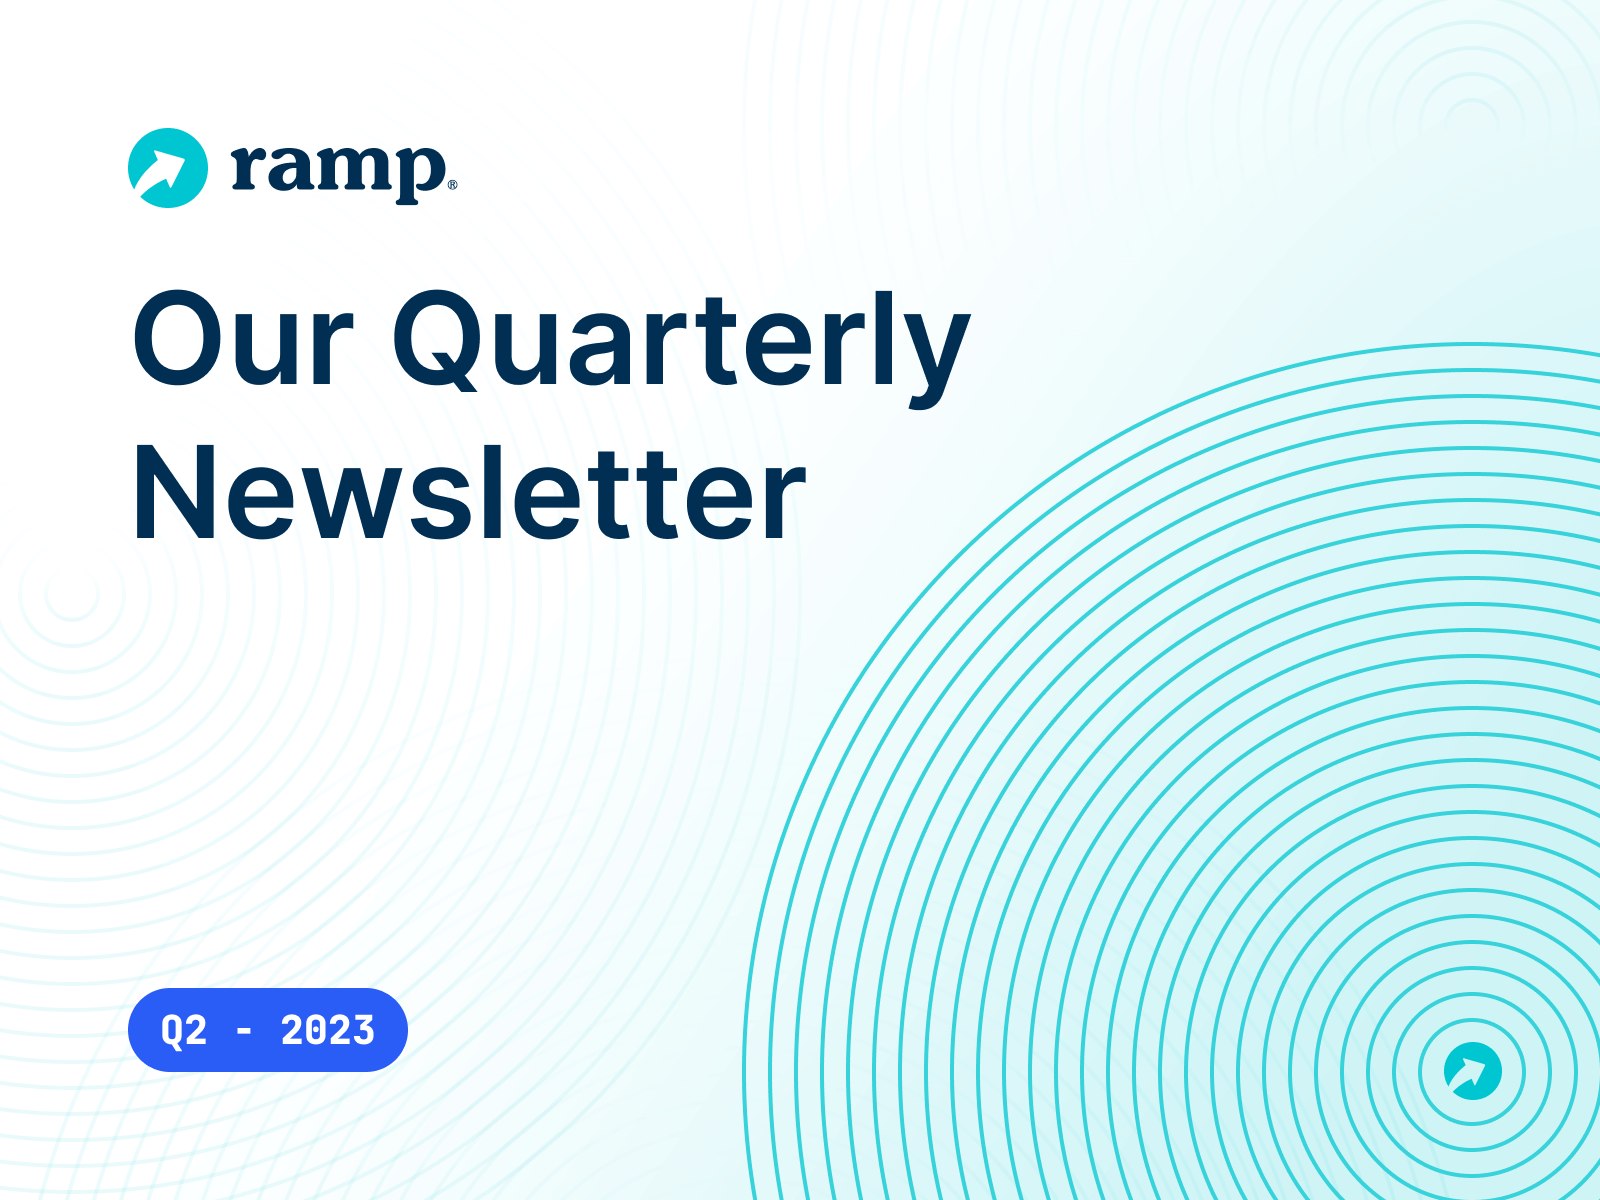 Our Quarterly Newsletter - Q2 2023